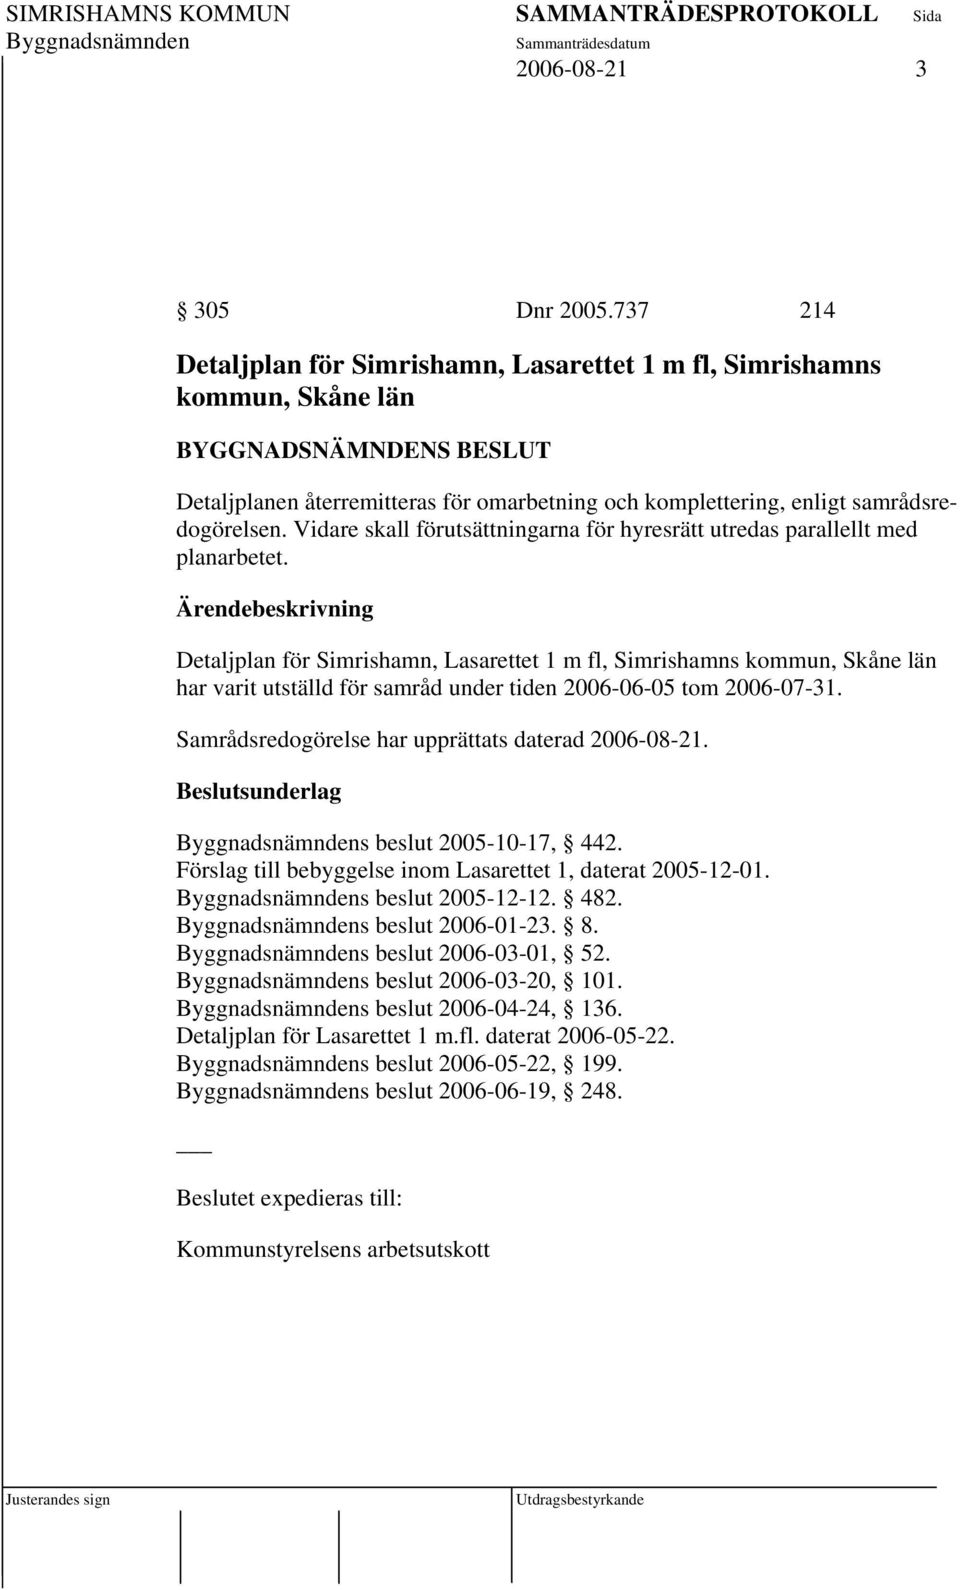 Detaljplan för Simrishamn, Lasarettet 1 m fl, Simrishamns kommun, Skåne län har varit utställd för samråd under tiden 2006-06-05 tom 2006-07-31. Samrådsredogörelse har upprättats daterad 2006-08-21.